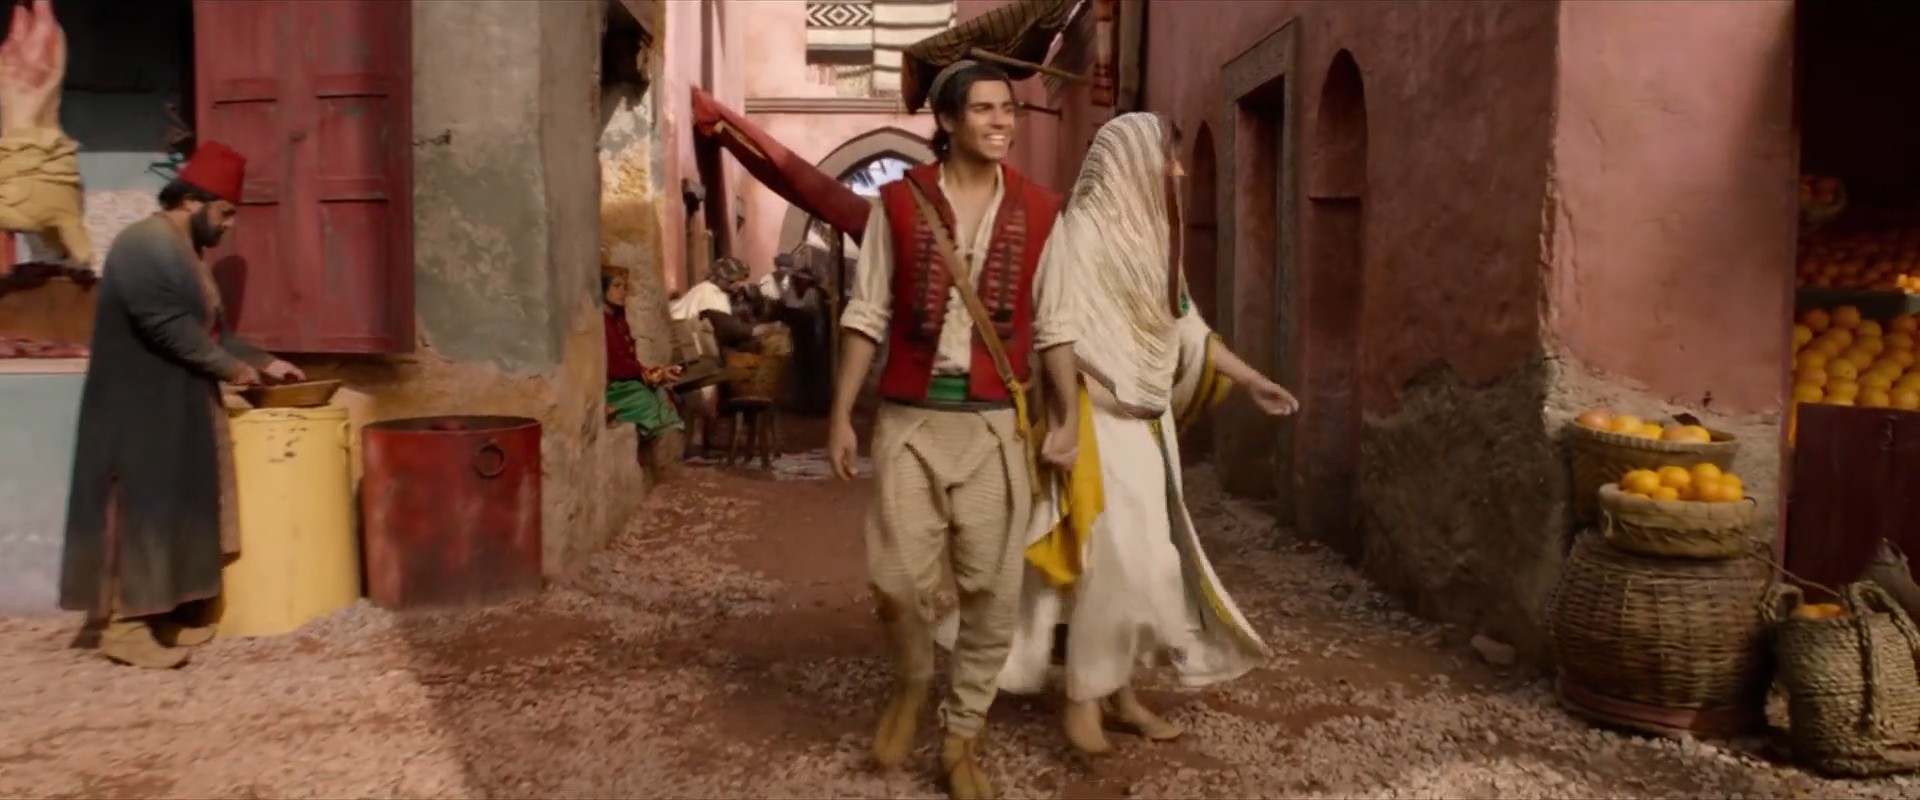 Aladdin (2019) HD 1080p Latino 